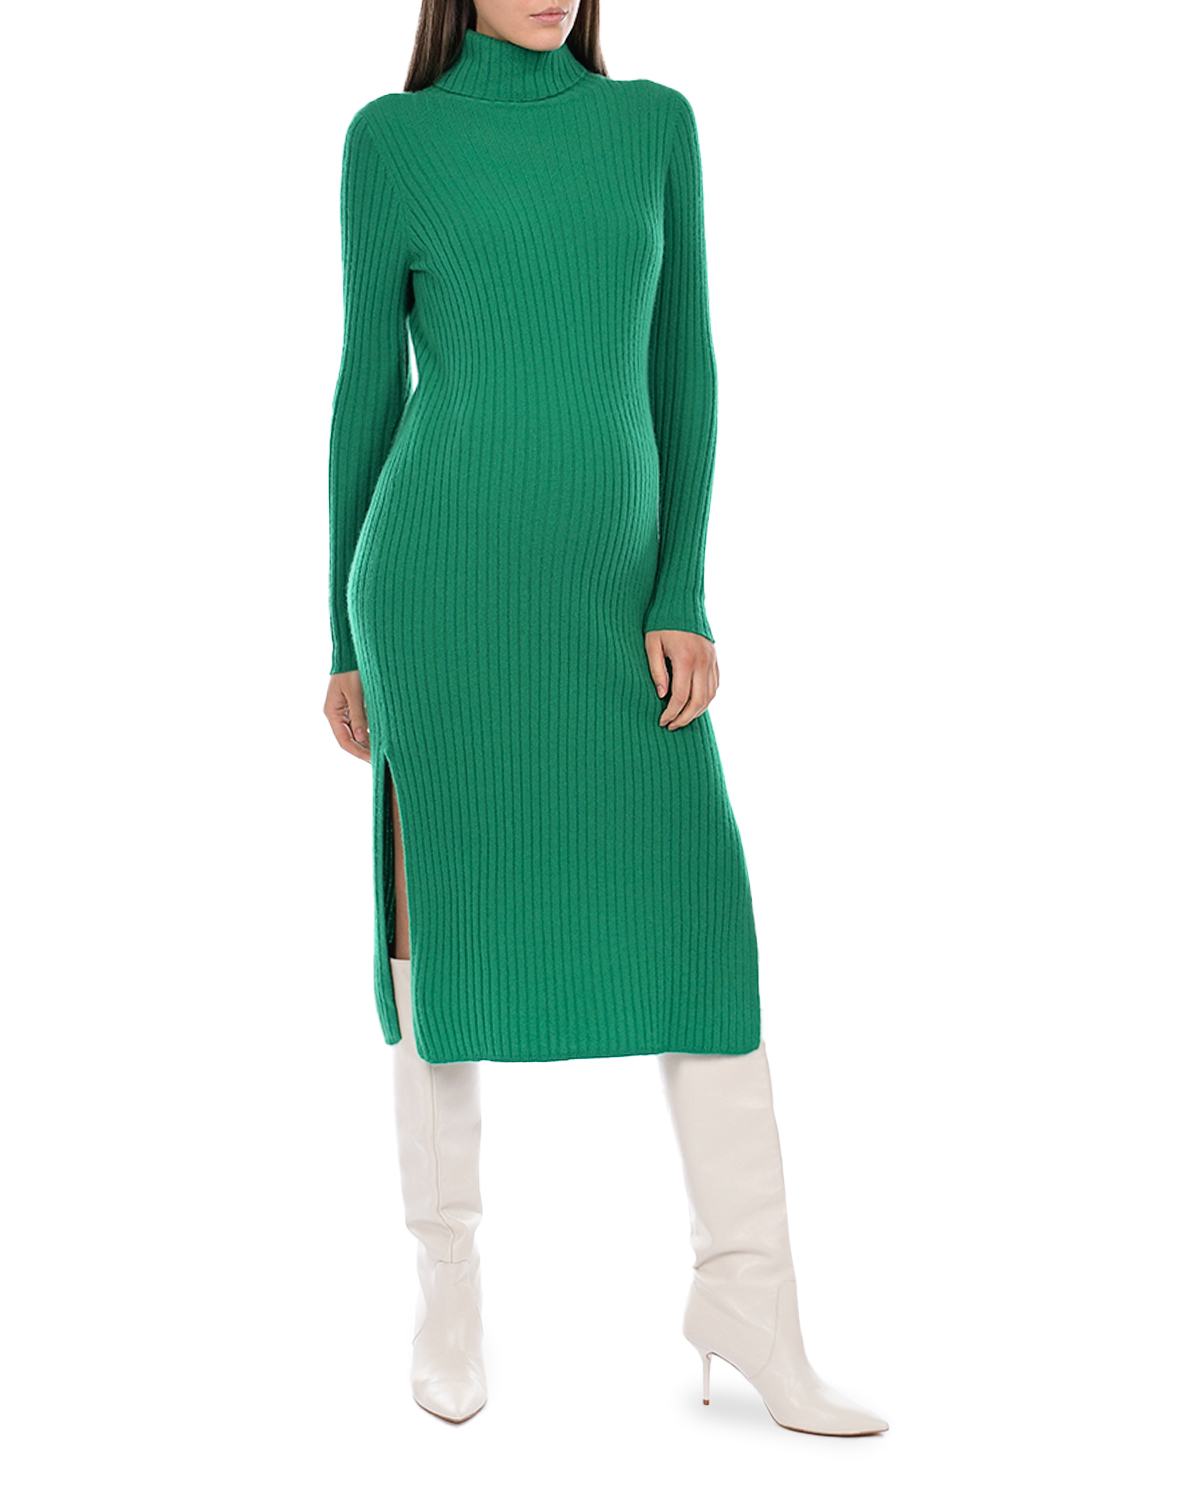 Платье из кашемира зеленого цвета Allude, размер 38 - фото 5